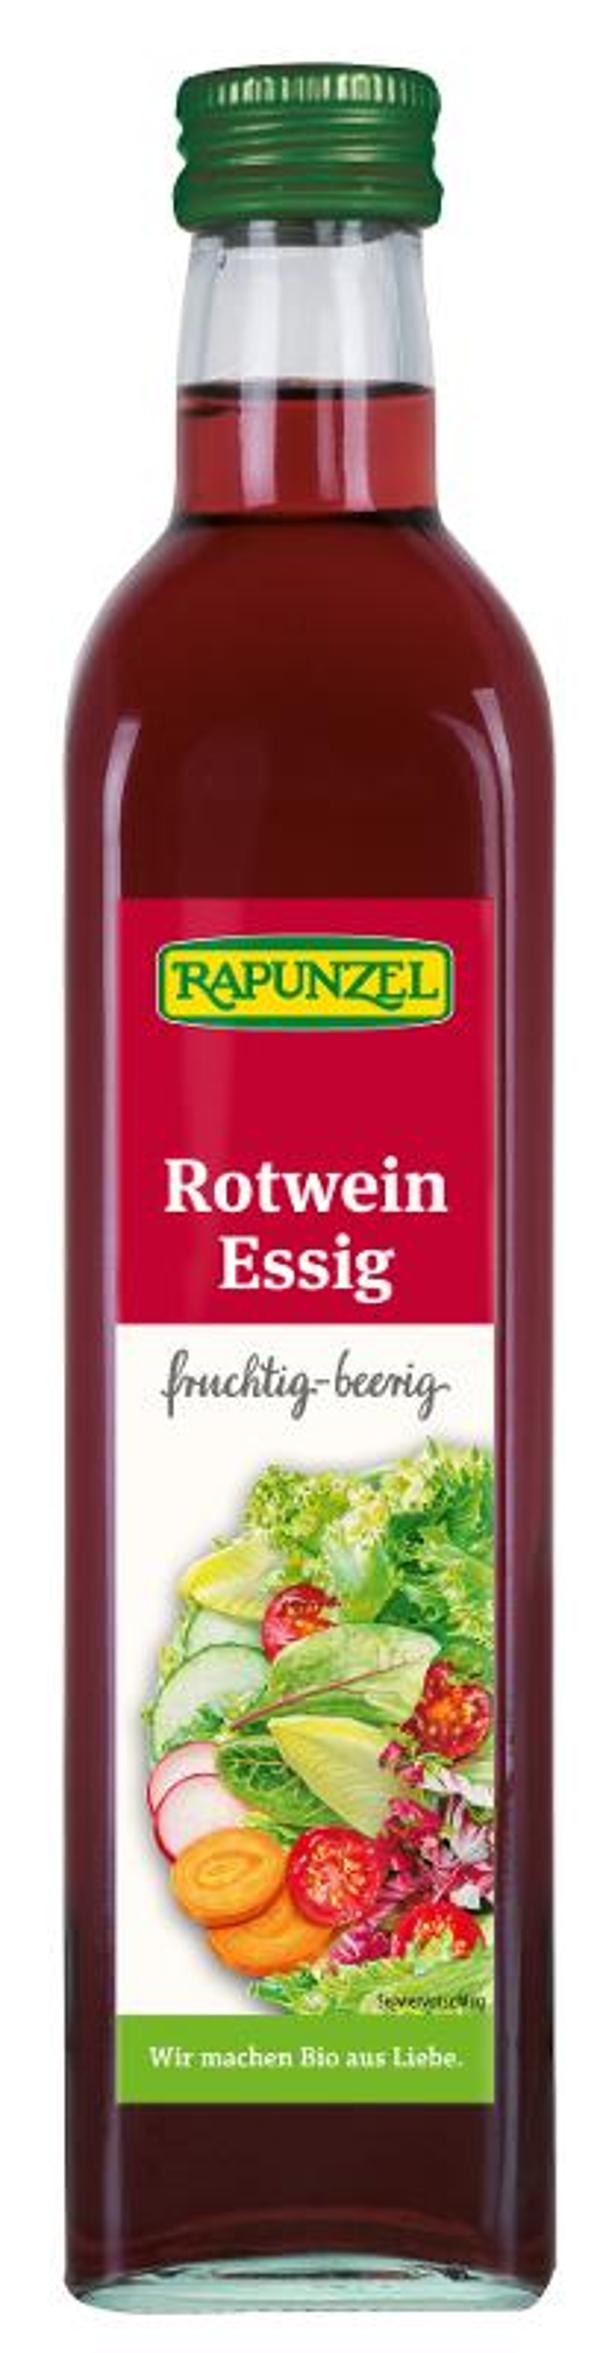 Produktfoto zu Rotweinessig Rapunzel